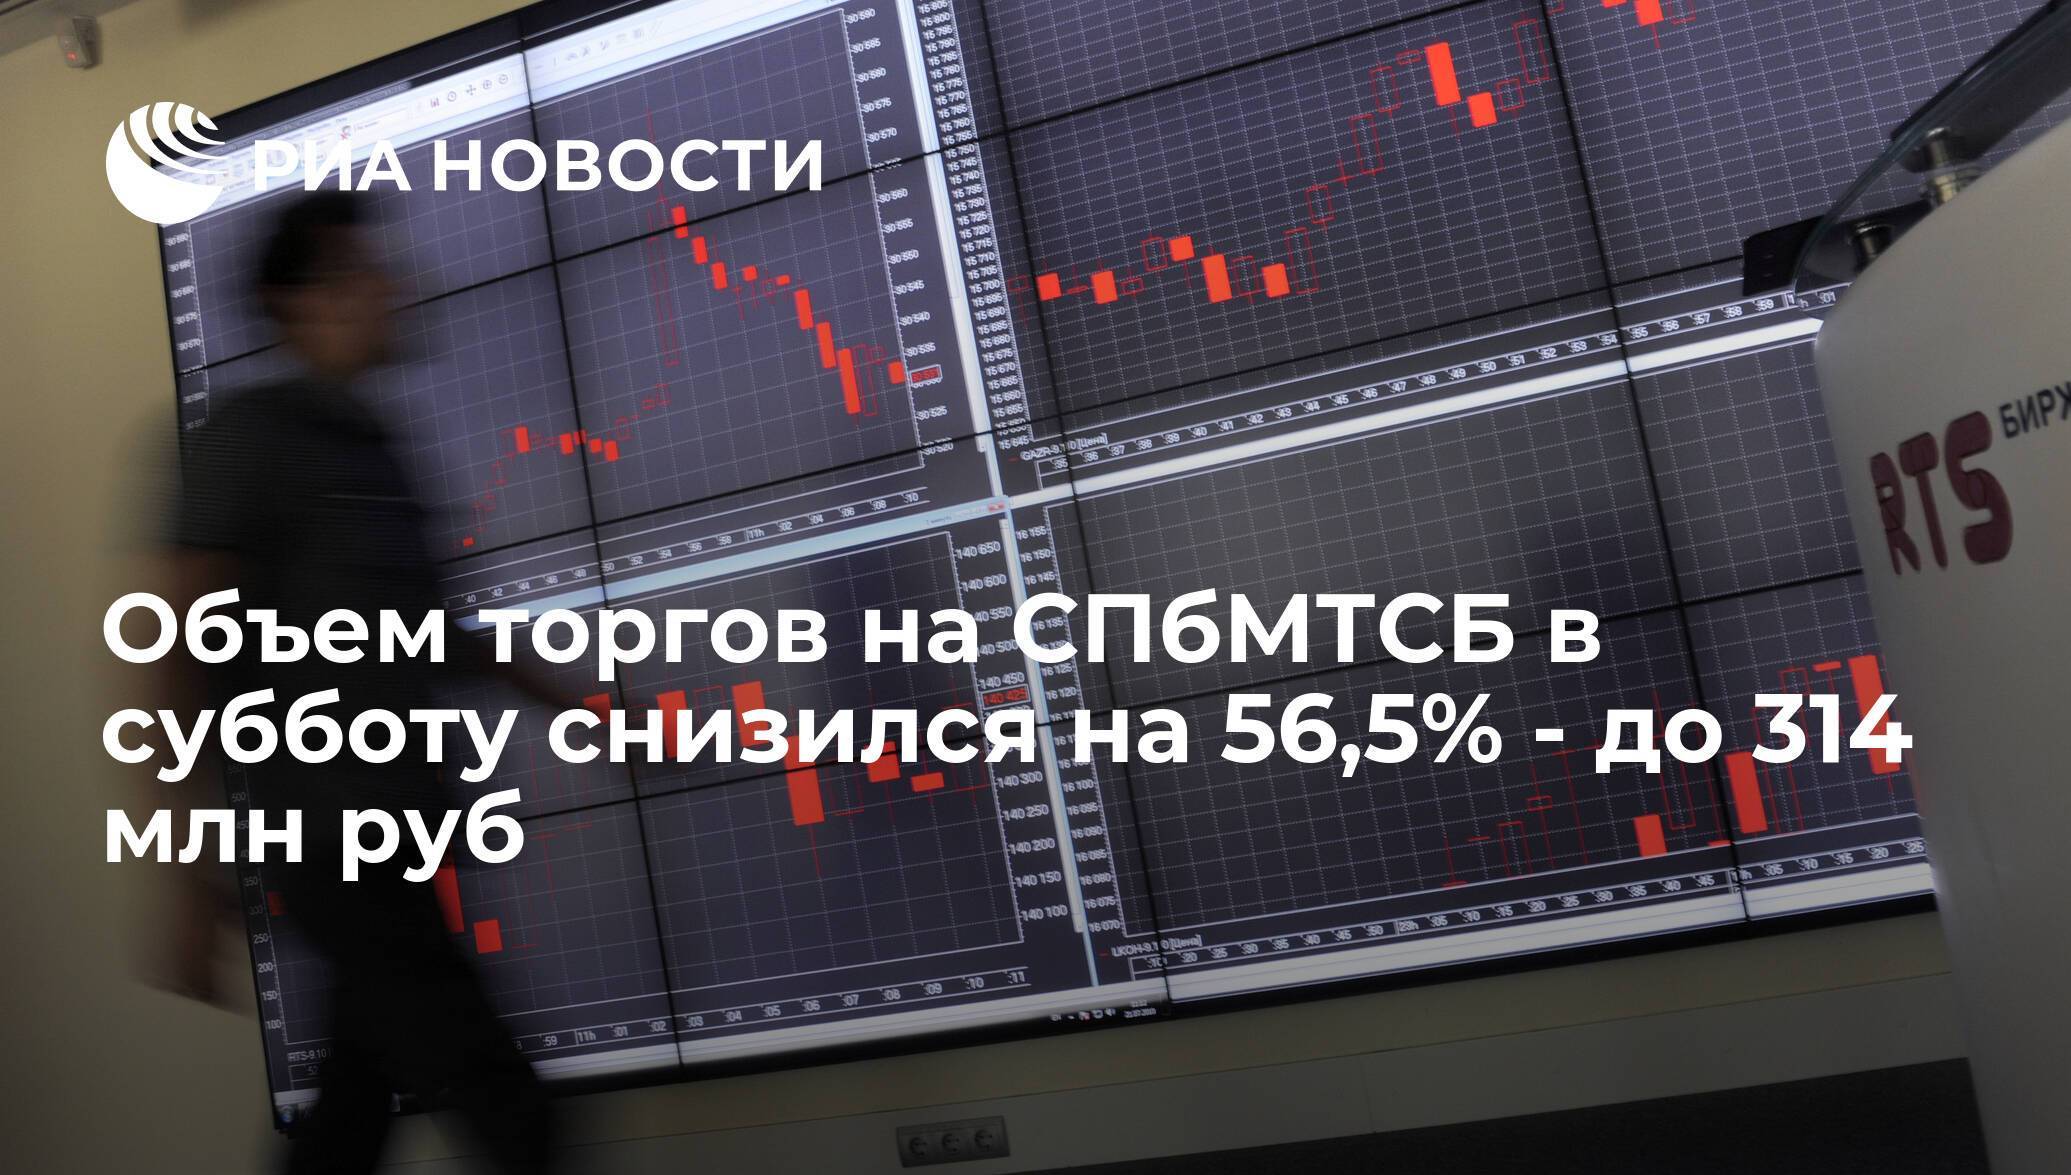 Санкт-петербургская биржа нефтепродуктов. зао «спбмтсб» - торги :: businessman.ru